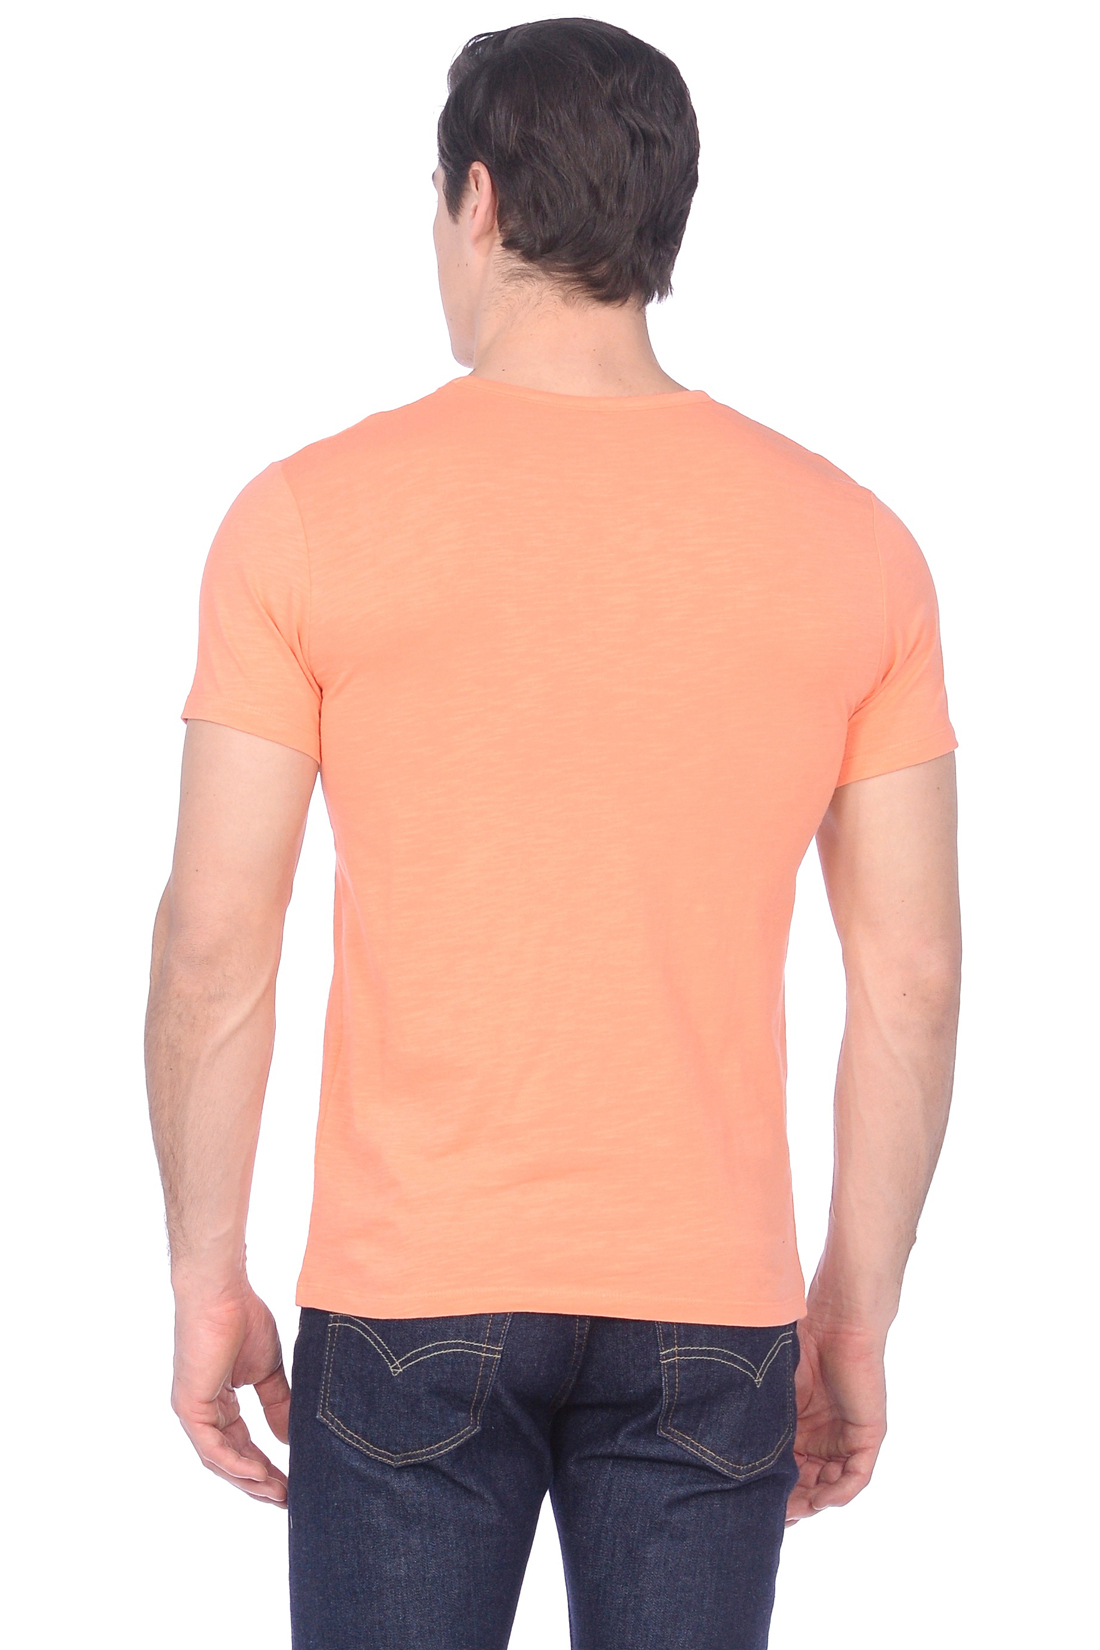 Футболка с винтажным принтом (арт. baon B739030), размер XL, цвет оранжевый Футболка с винтажным принтом (арт. baon B739030) - фото 3